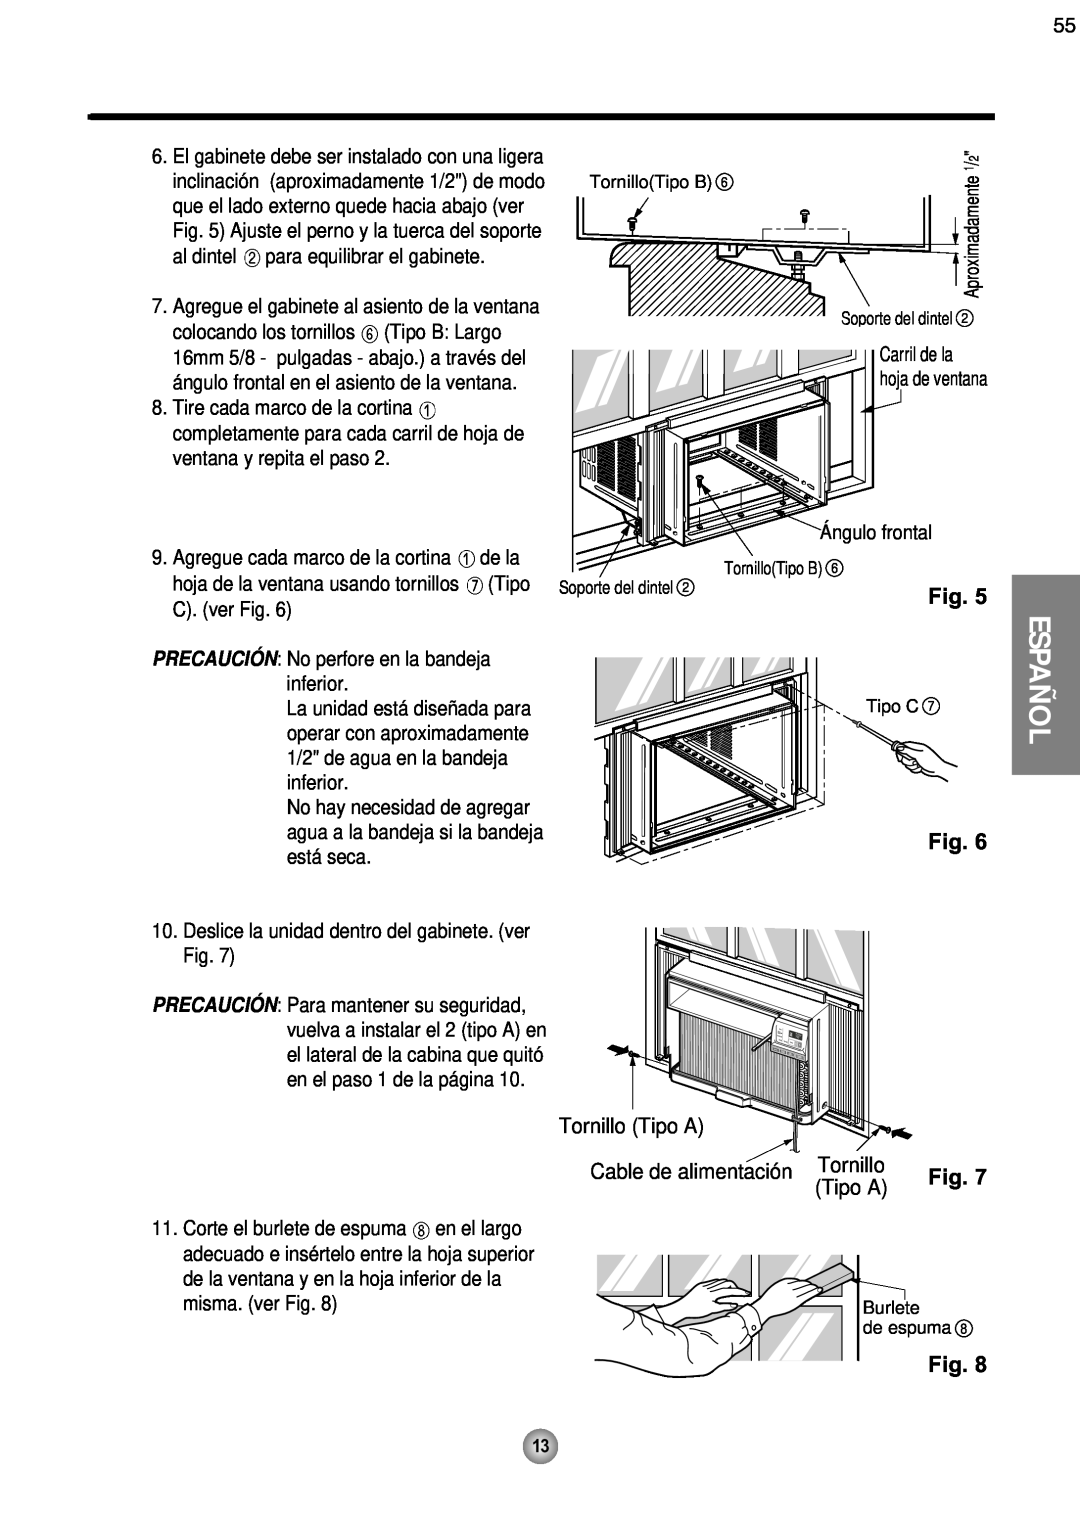 Friedrich CP08 operation manual Español, Tornillo Tipo A, Cable de alimentación 